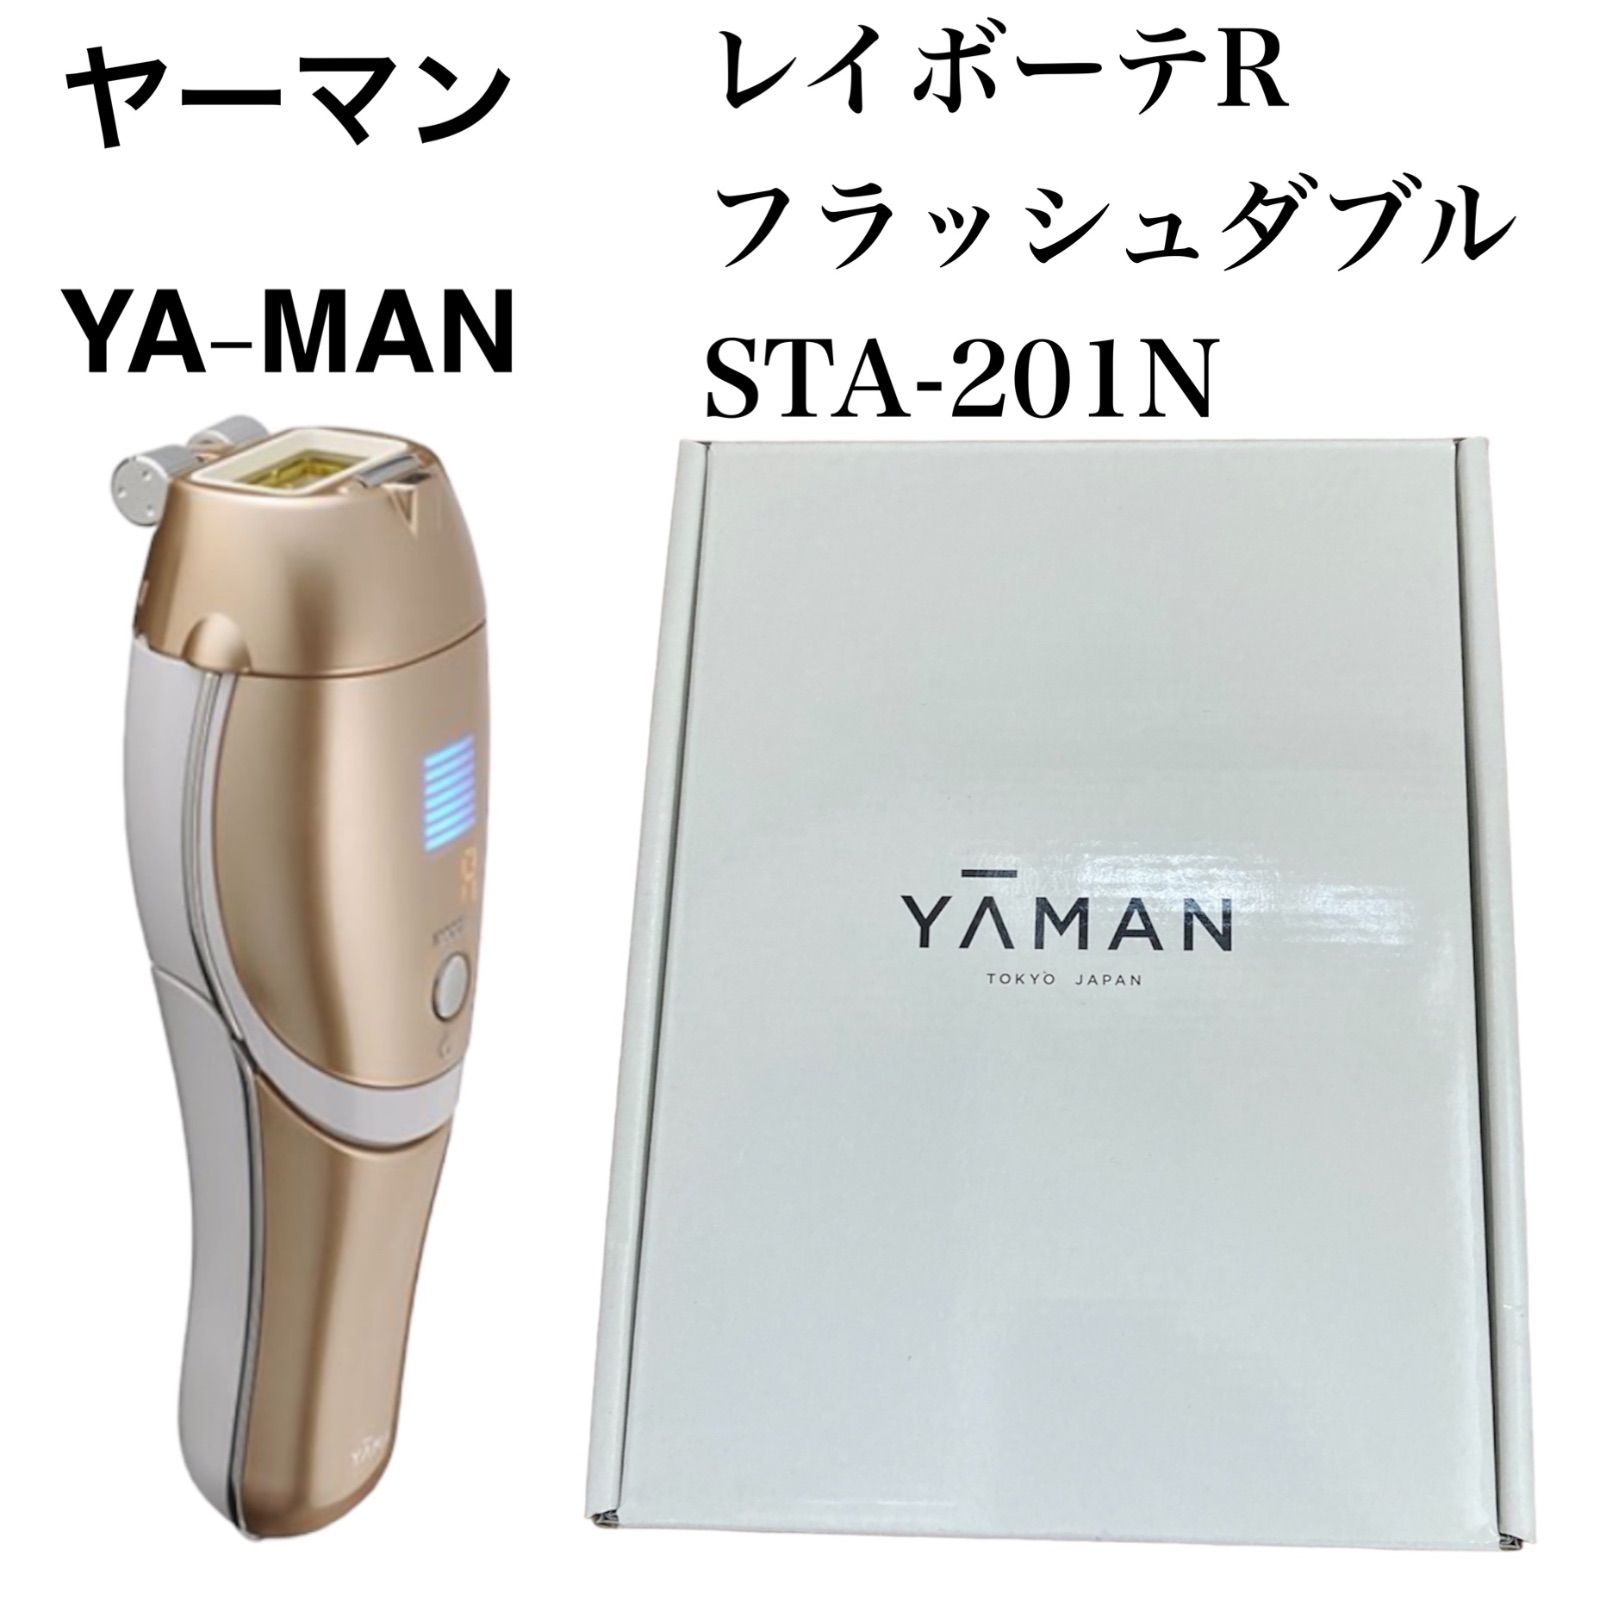 YA-MAN 家庭用光美容器 STA-201N 新品-